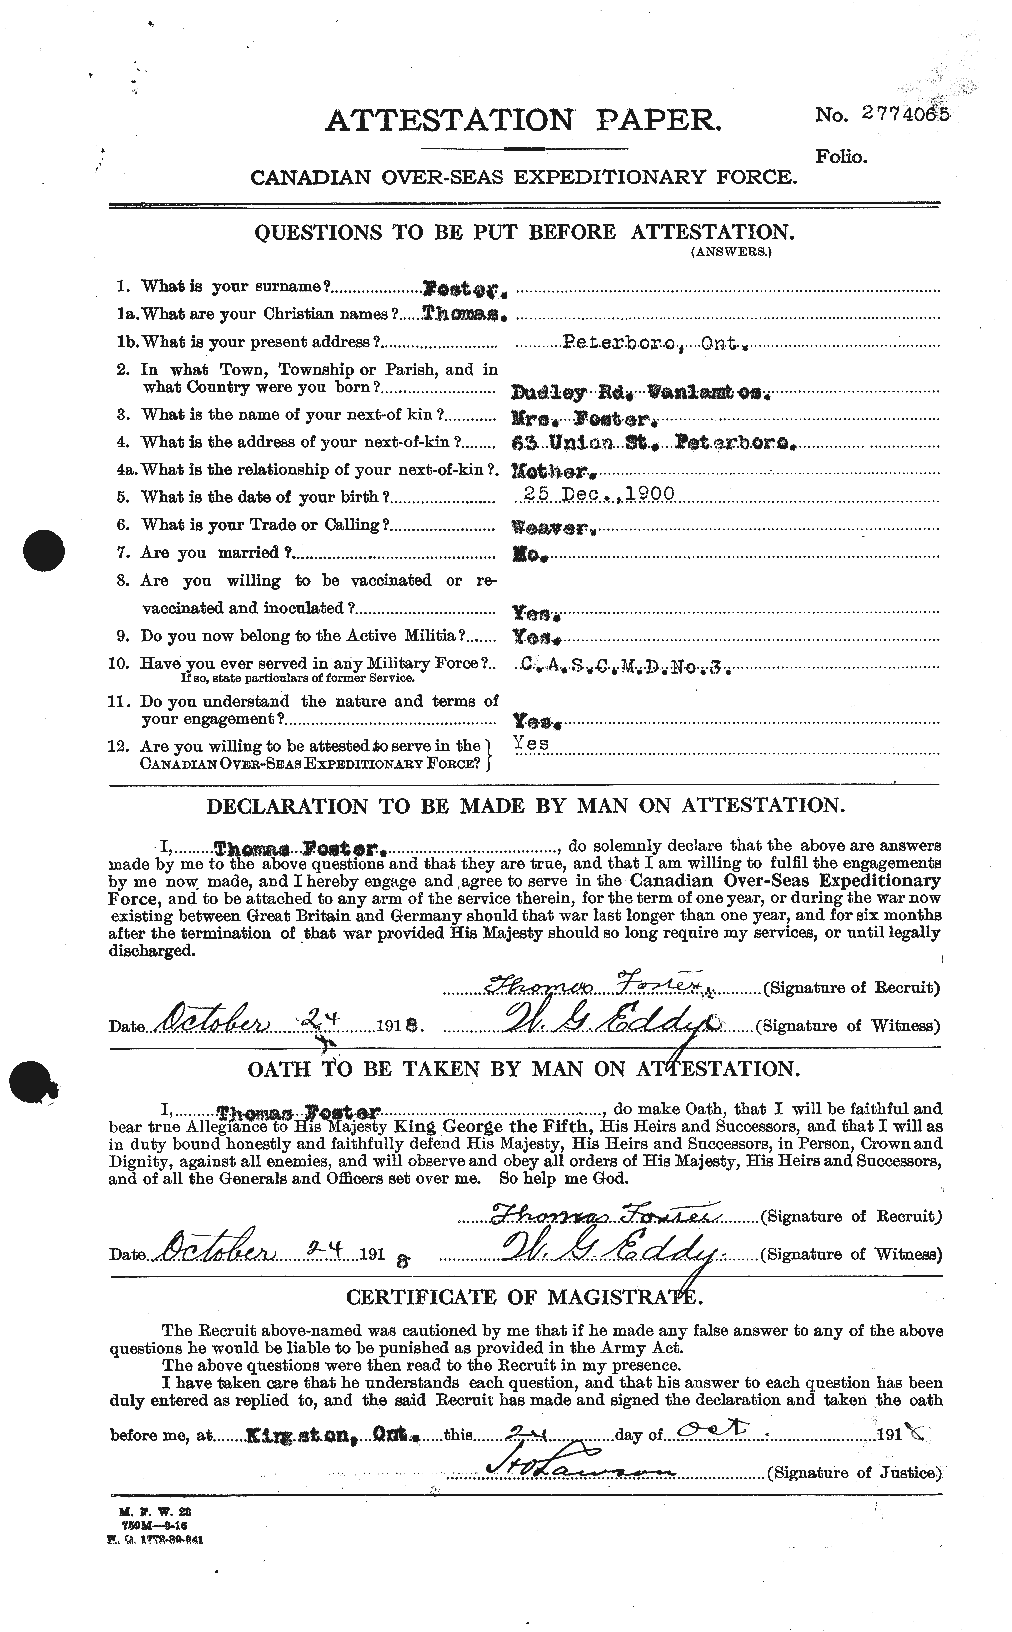 Dossiers du Personnel de la Première Guerre mondiale - CEC 335220a